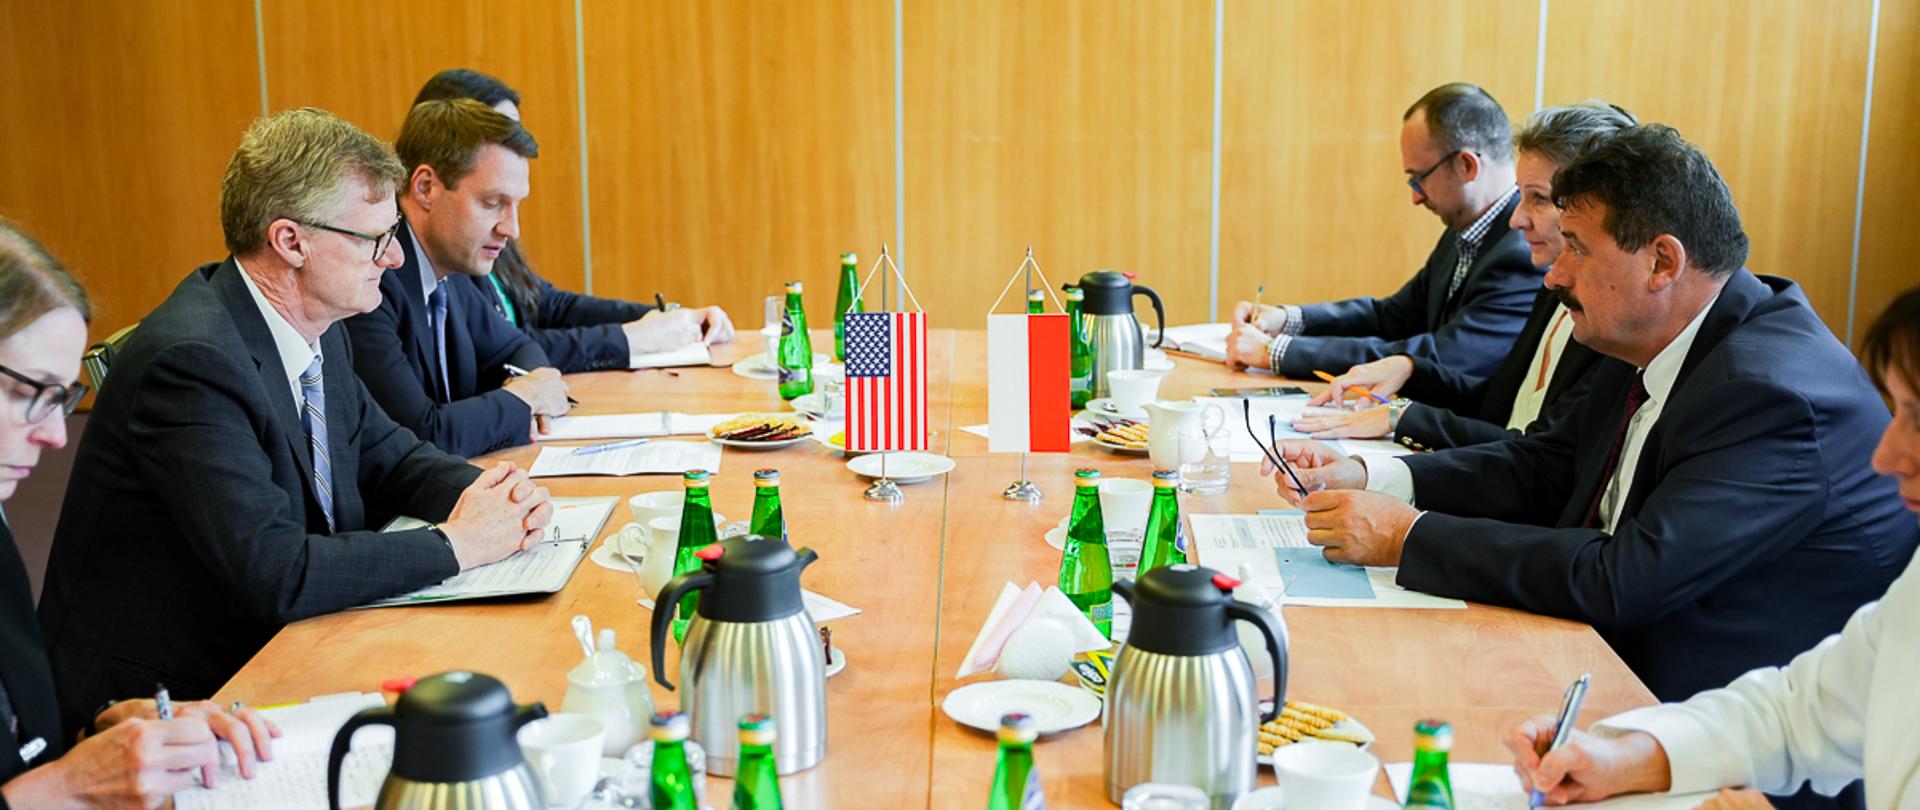 Delegacja amerykańska podczas rozmów w MRiRW (fot. MRiRW)